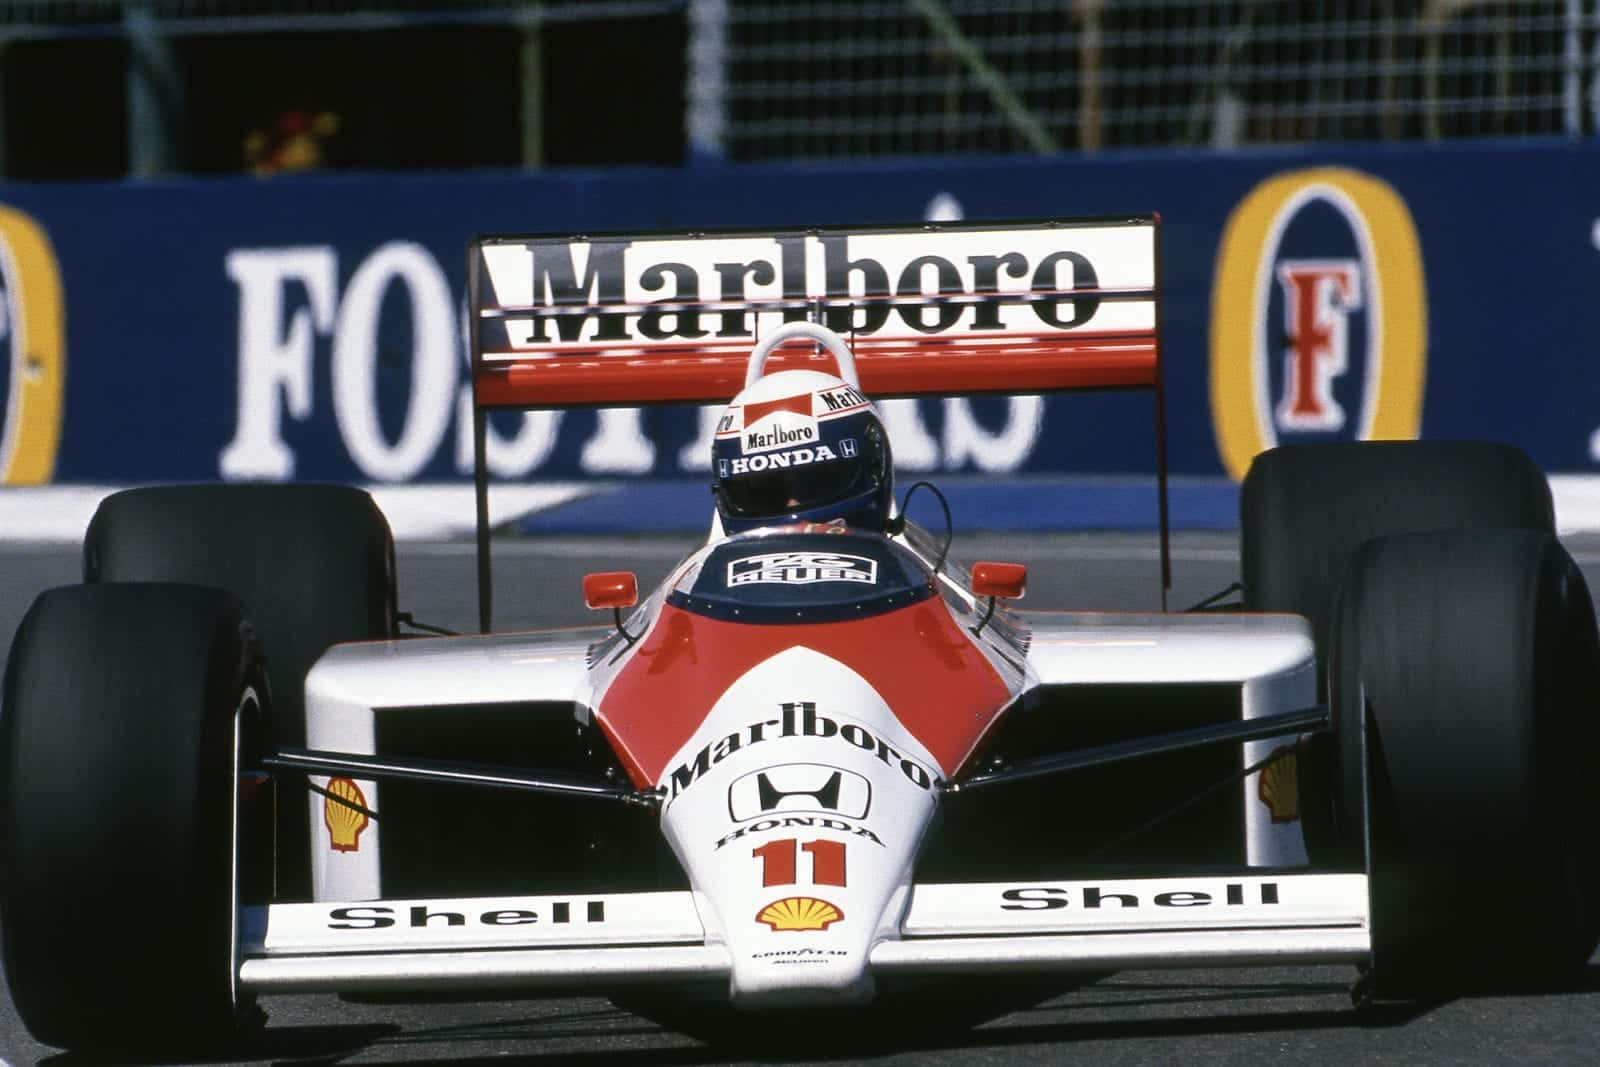 1988 AUS GP Prost